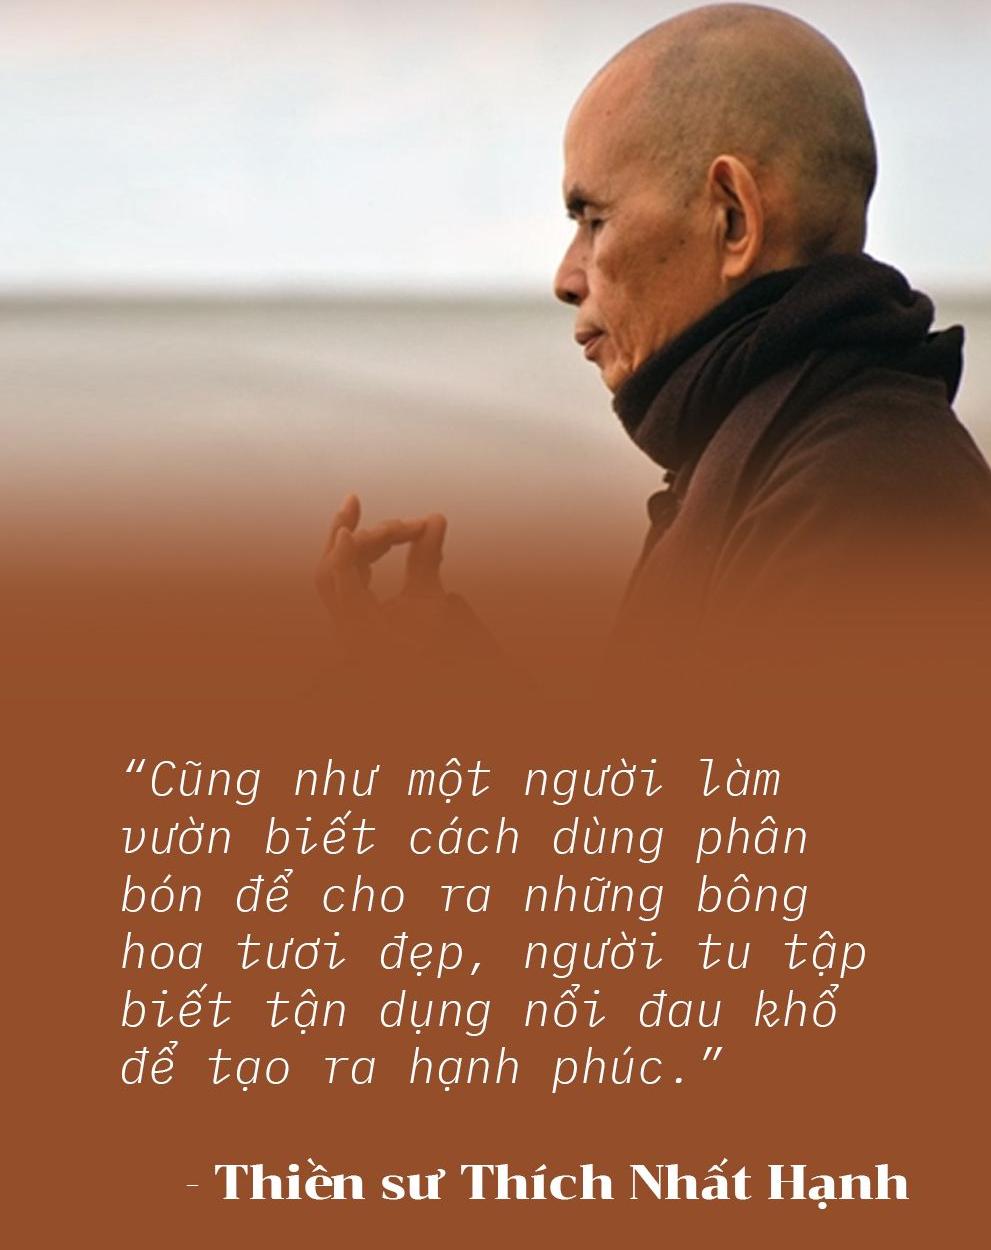 Những câu nói truyền cảm hứng sống, vượt qua khổ đau của Thiền sư Thích Nhất Hạnh - Ảnh 3